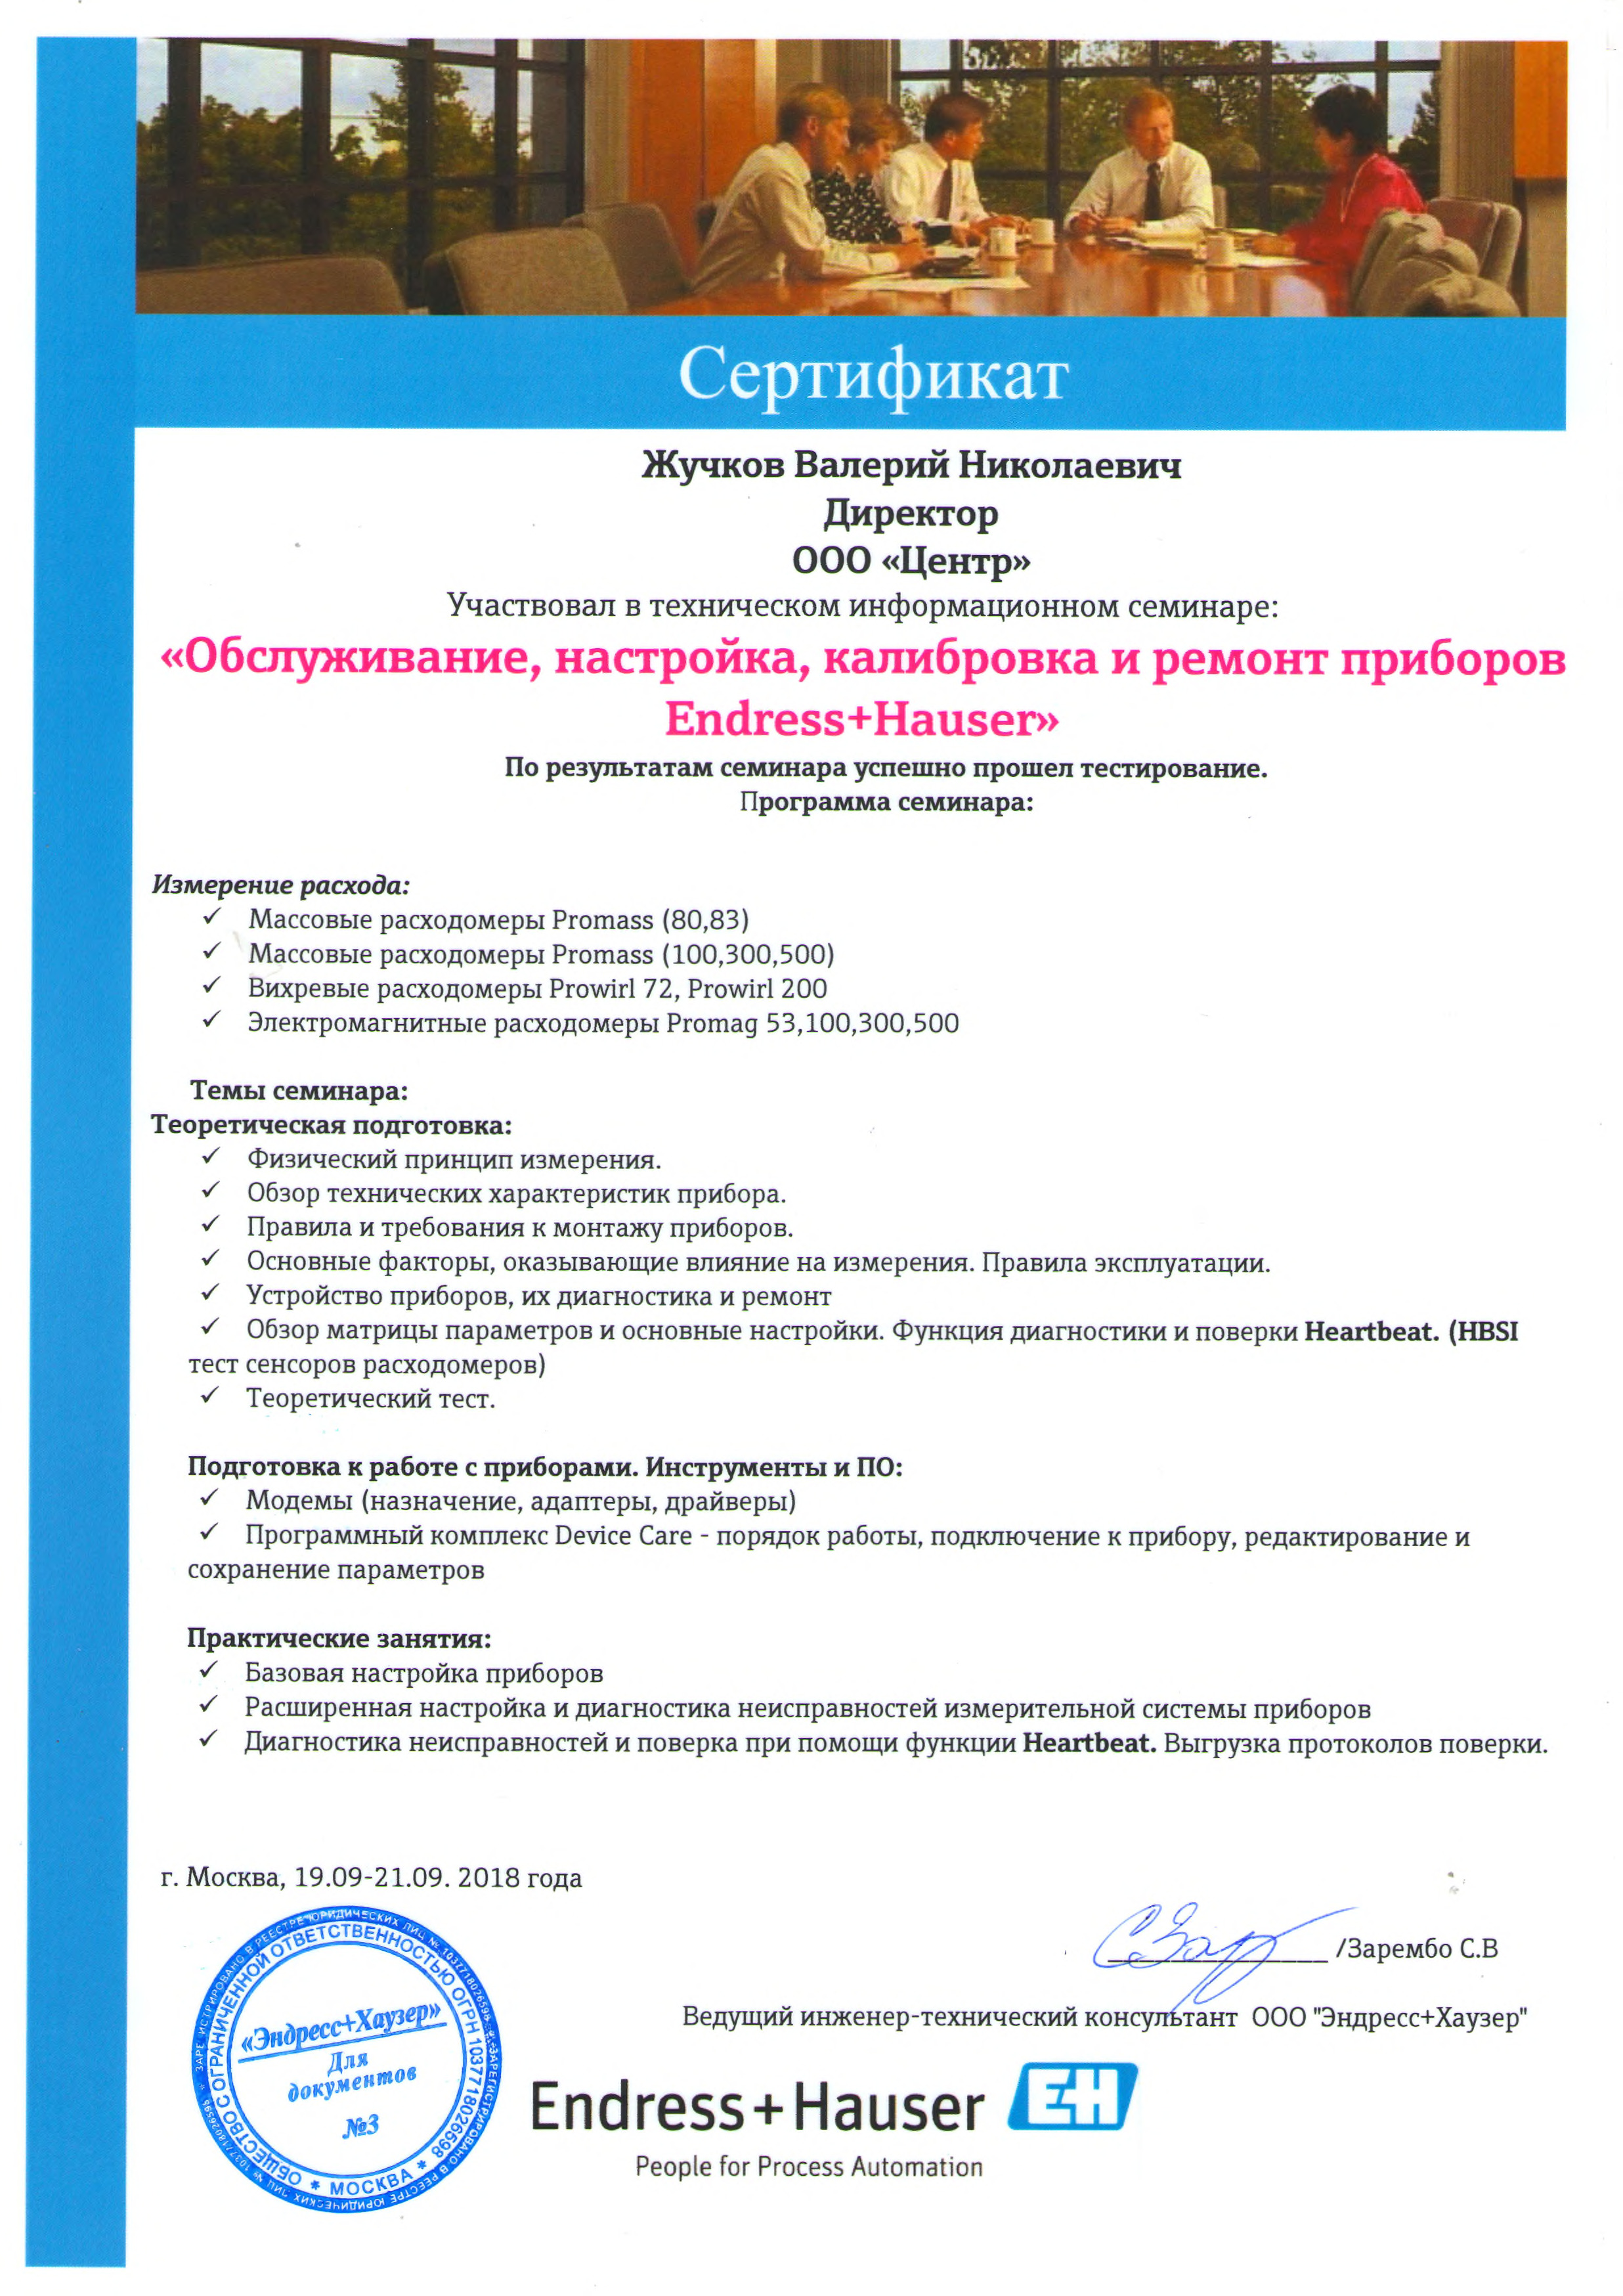 Сертификат Endress+Hauser Обслуживание,настройка,калибровка и ремонт приборов (Жучков В.Н.)